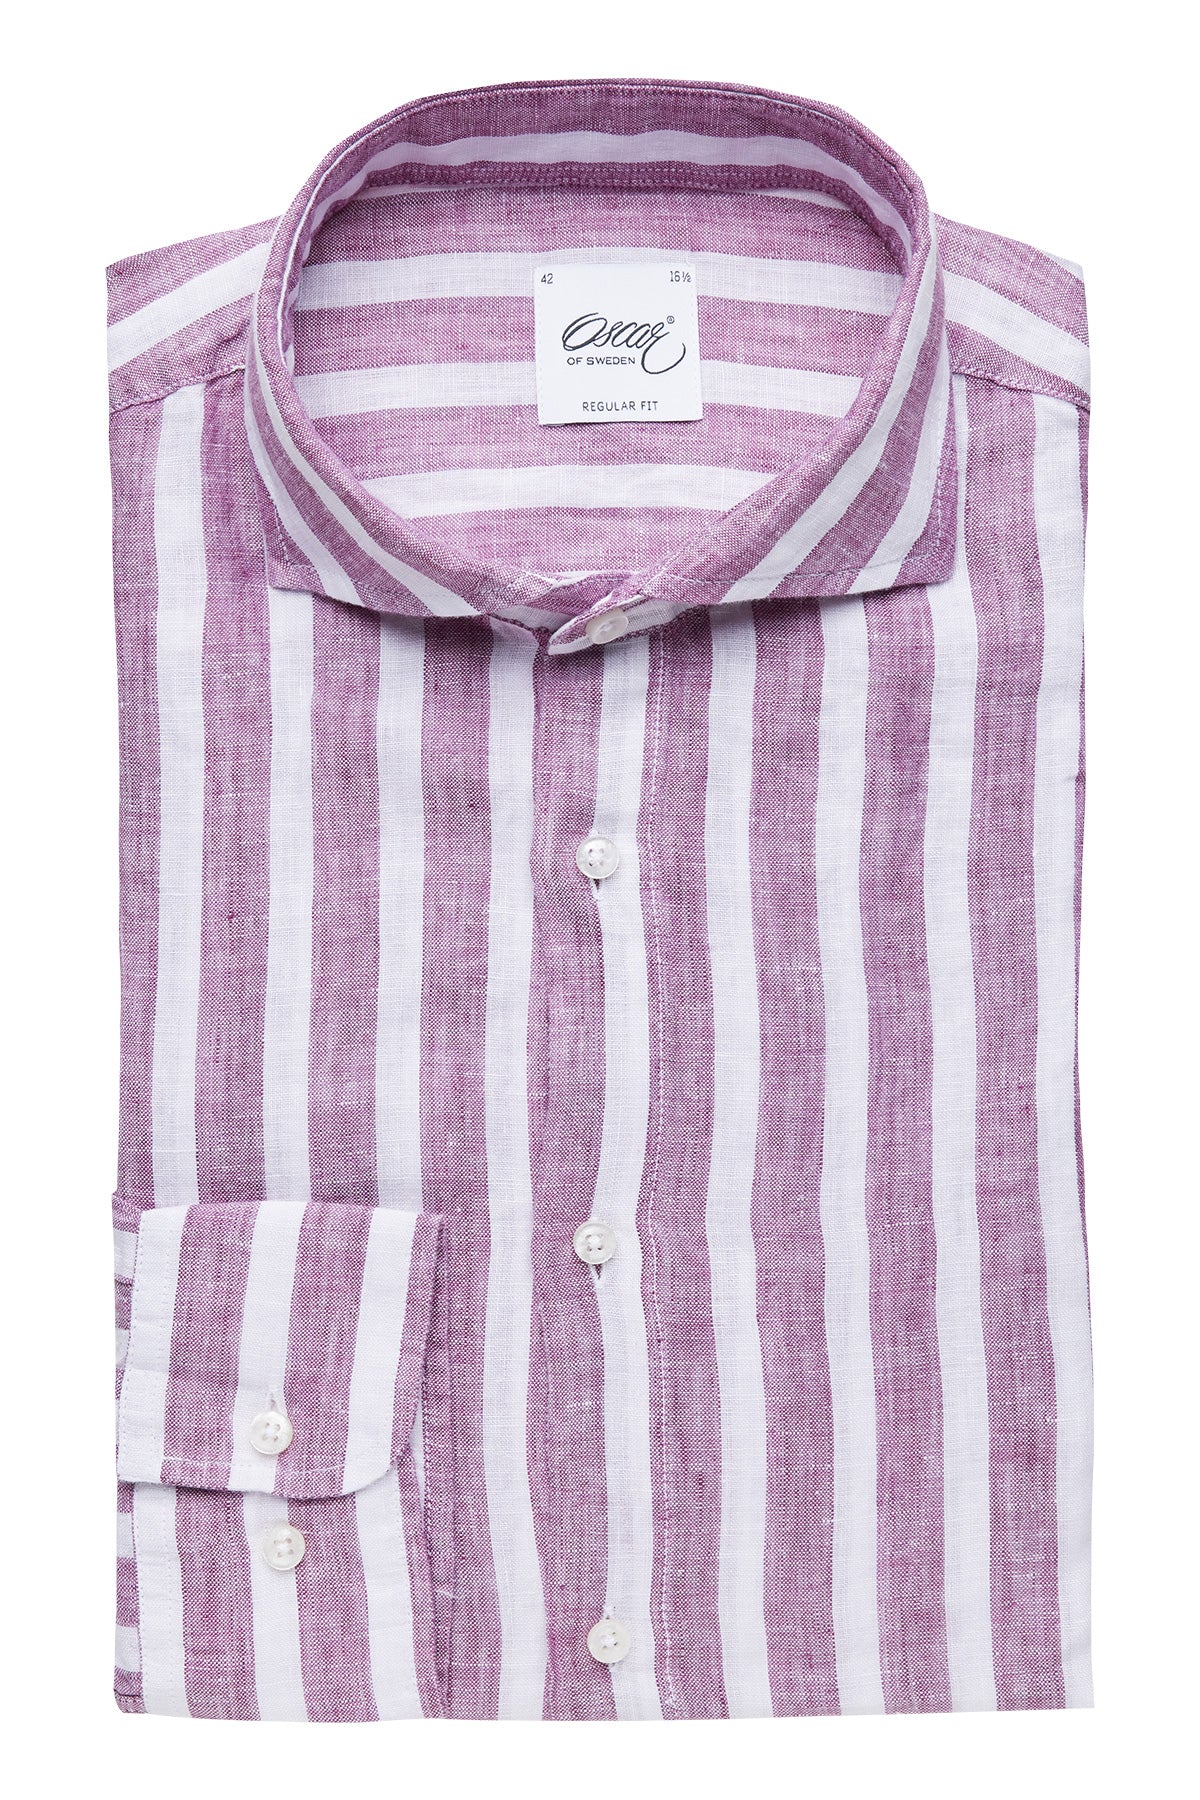 Cerise striped regular fit linen shirt